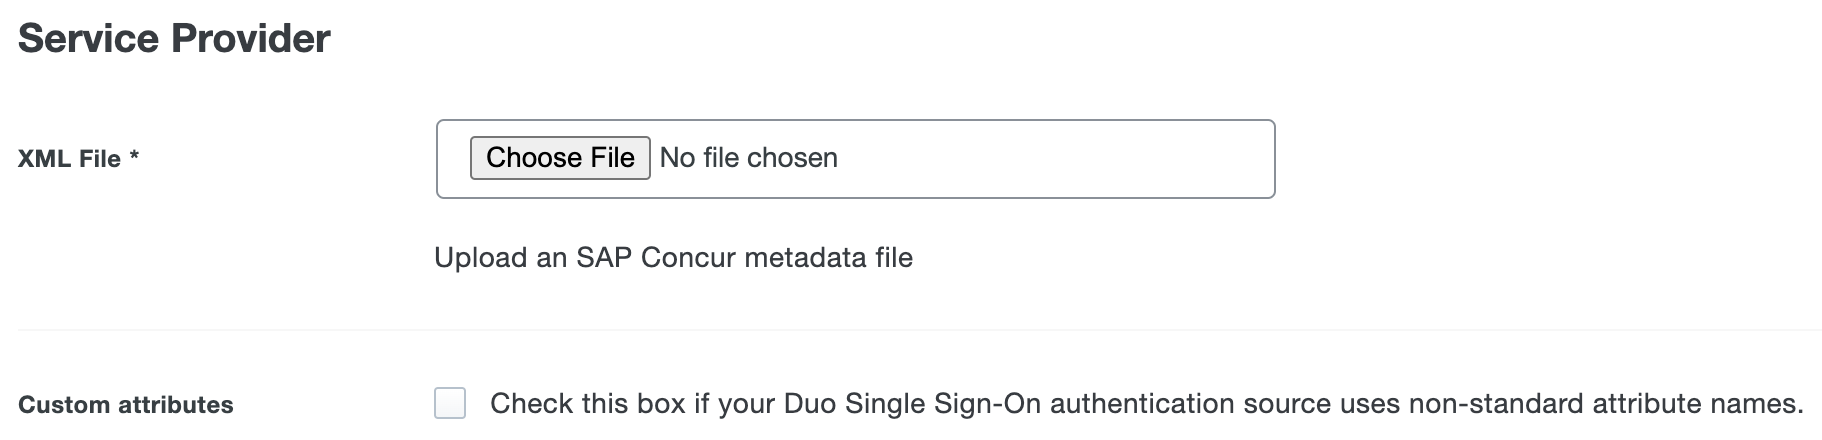 Duo SAP Concur Custom Attributes Checkbox